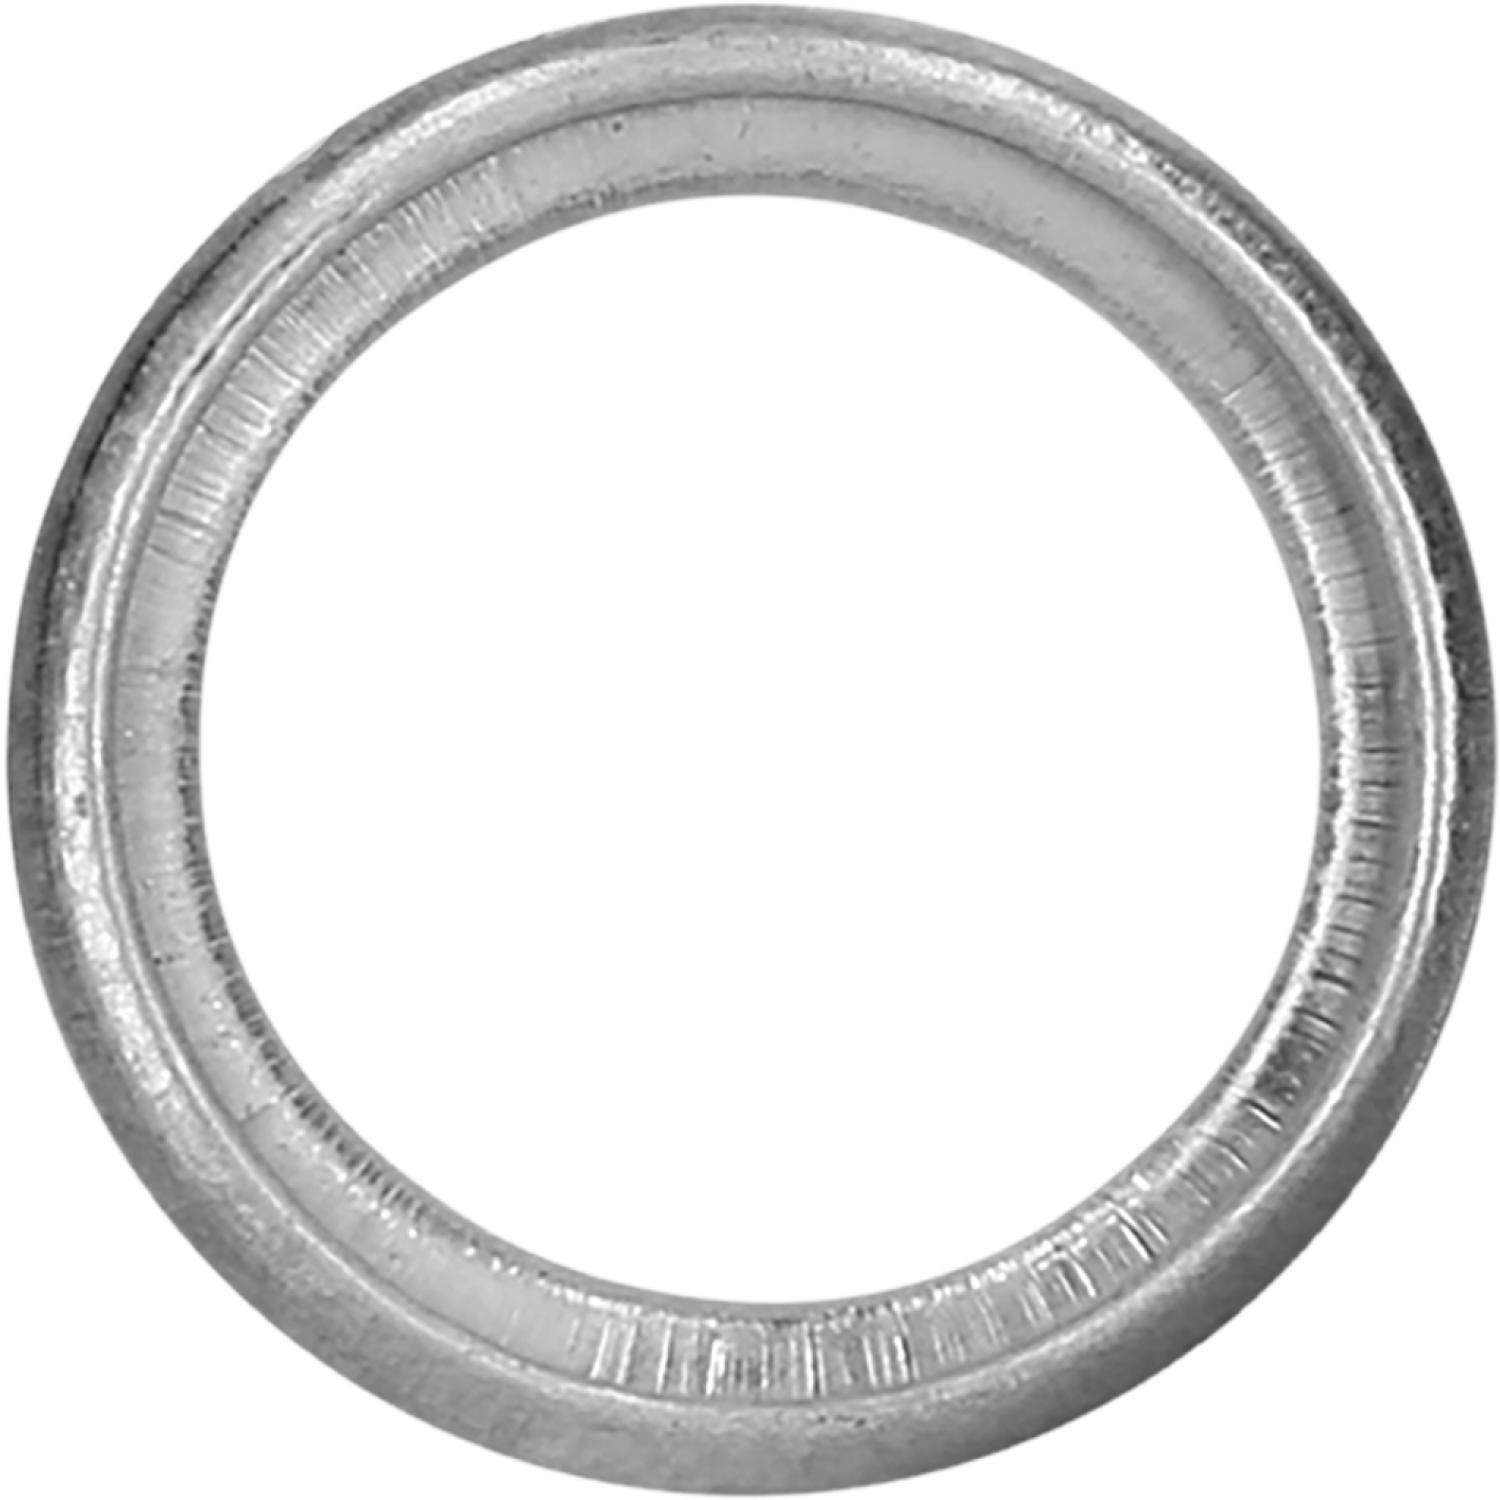 Уплотнительное кольцо, мягкий материал, Ø 20 x 14 мм, 25 шт в упаковке